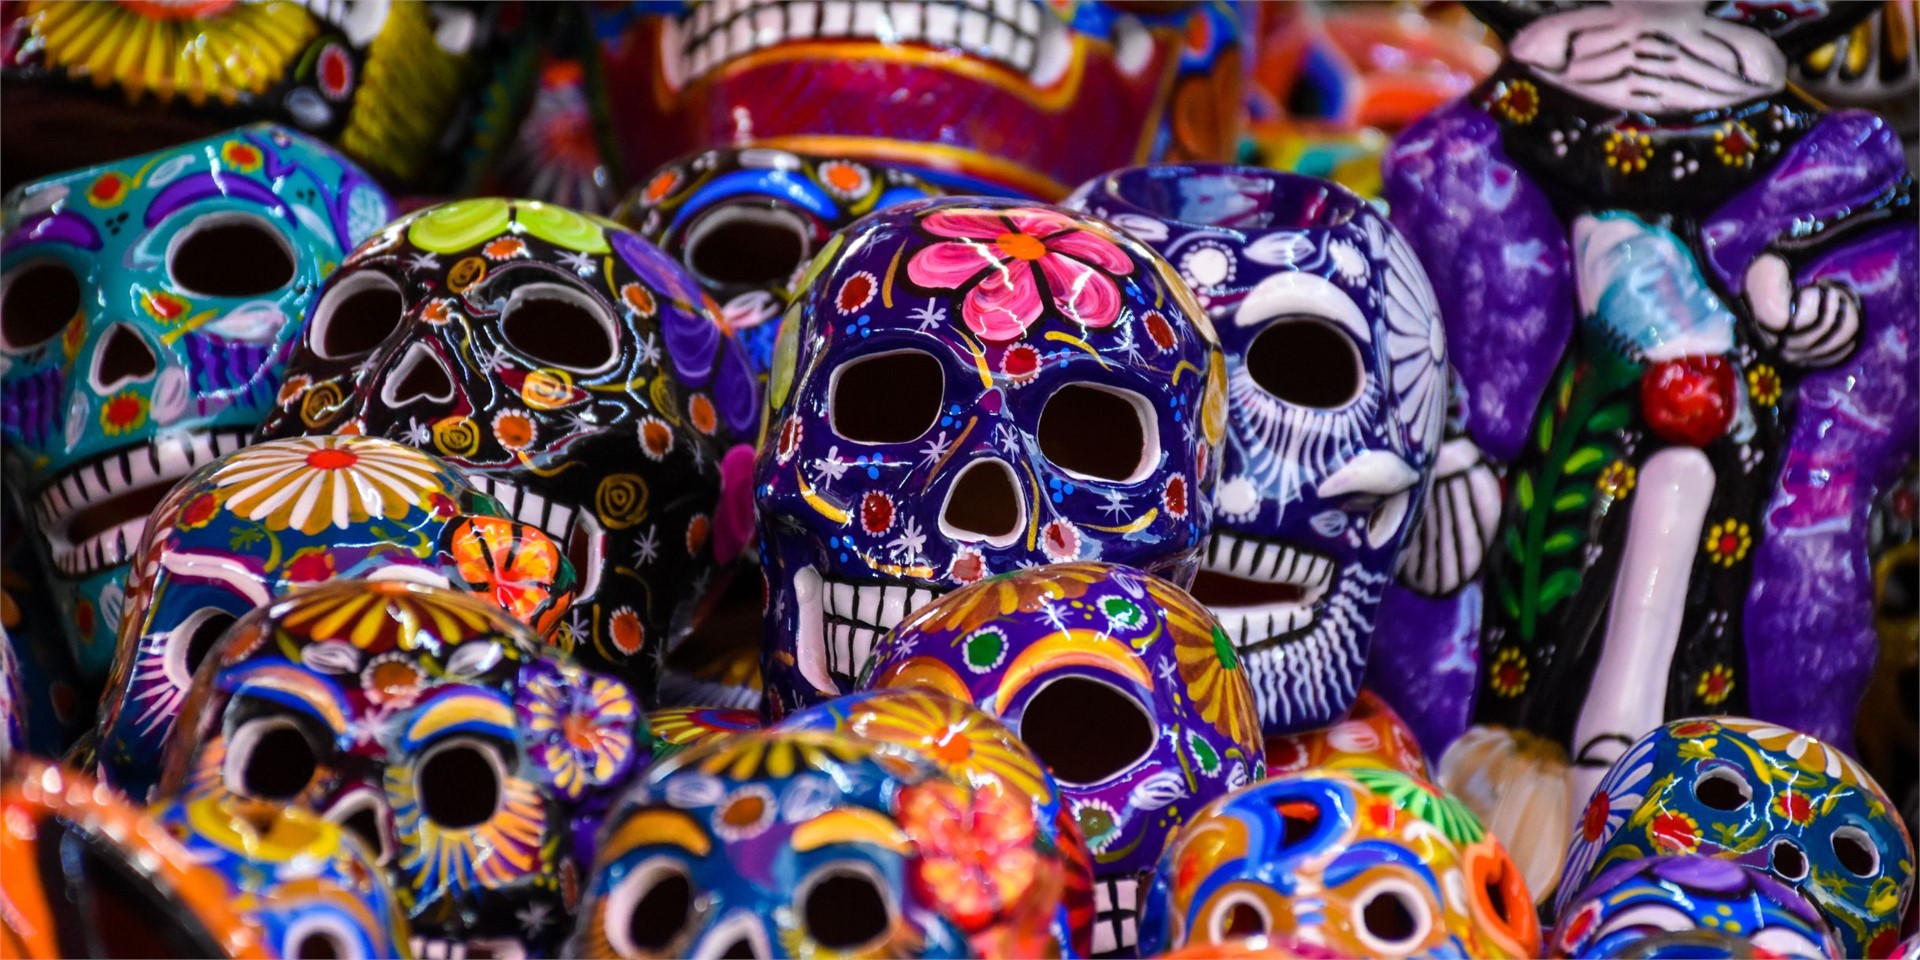 Buche Deine Reise zum Día de los Muertos in Mexiko-Stadt
